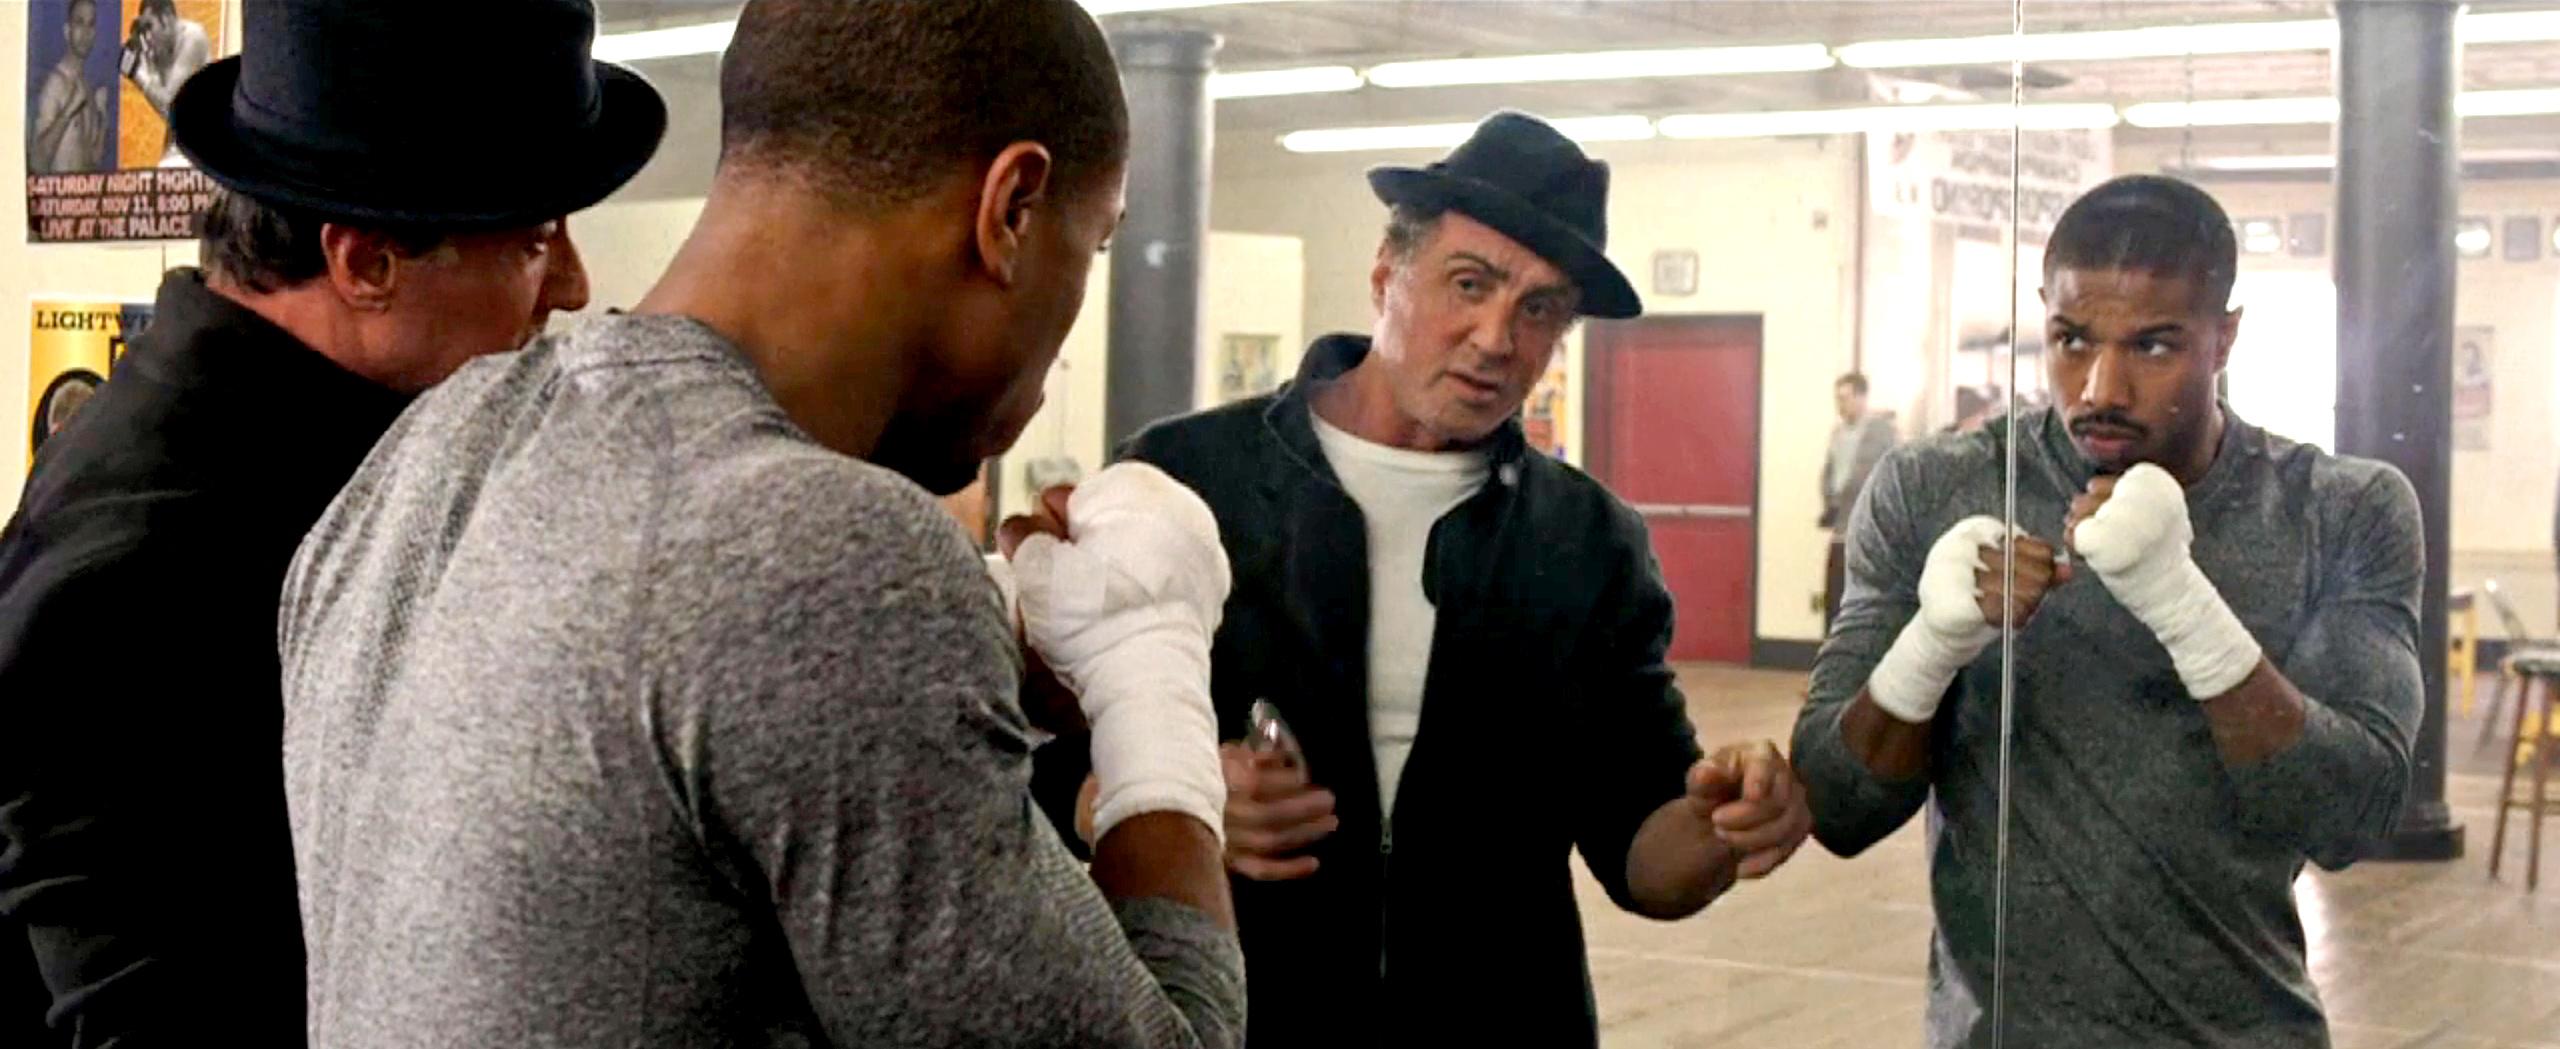 Trailer de Creed: Nascido para Lutar mostra o legado de um lutador